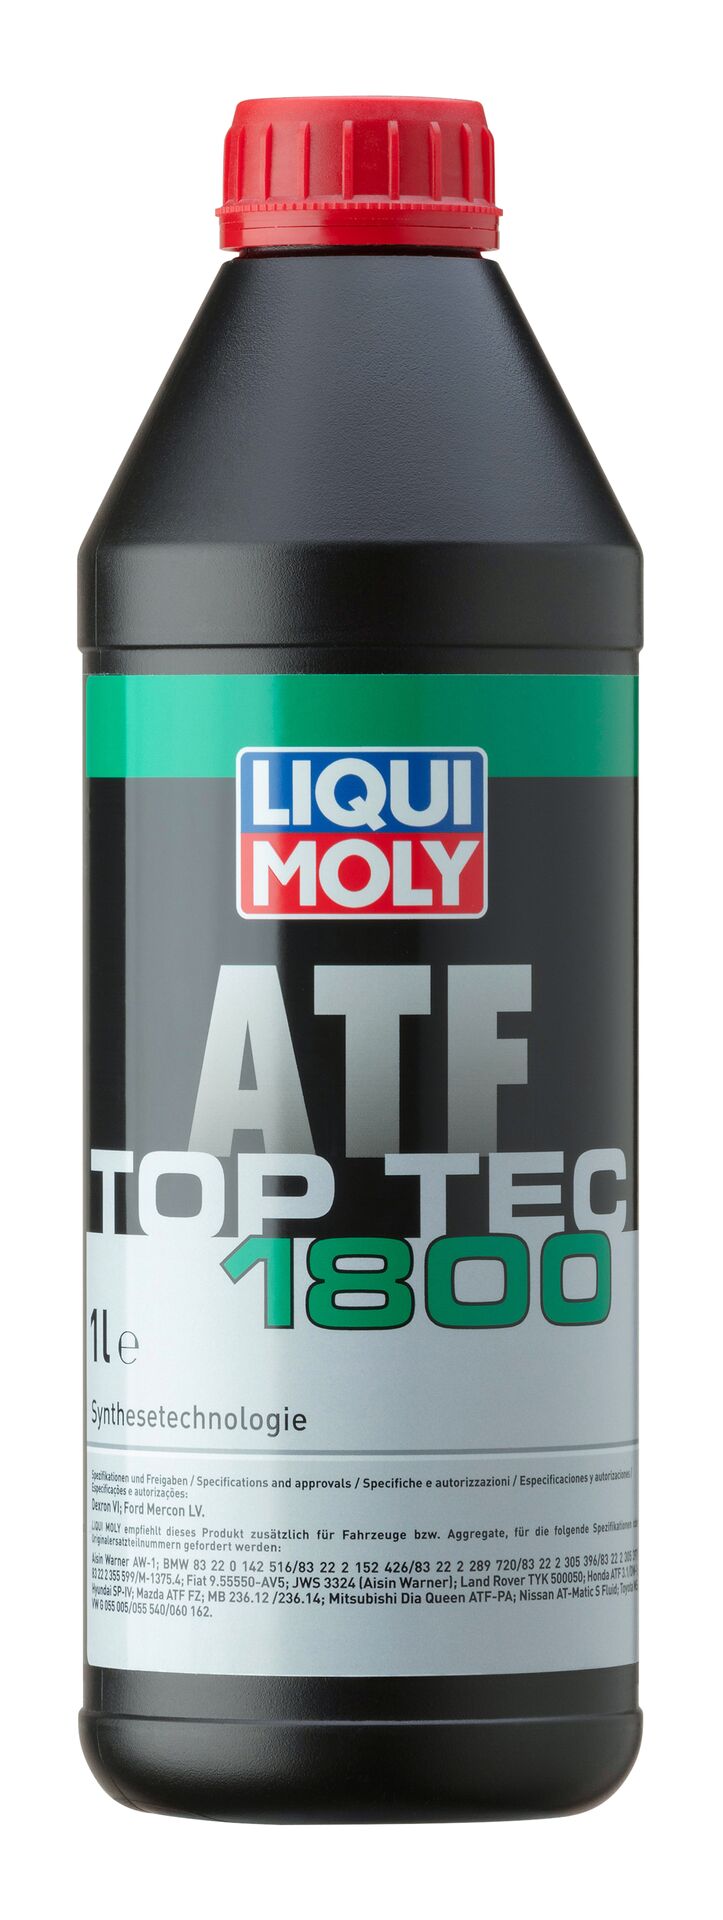 Liqui Moly 1L Top Tec ATF 1800 Automatik-Getriebeöl DEXRON VI FORD MERVON LV